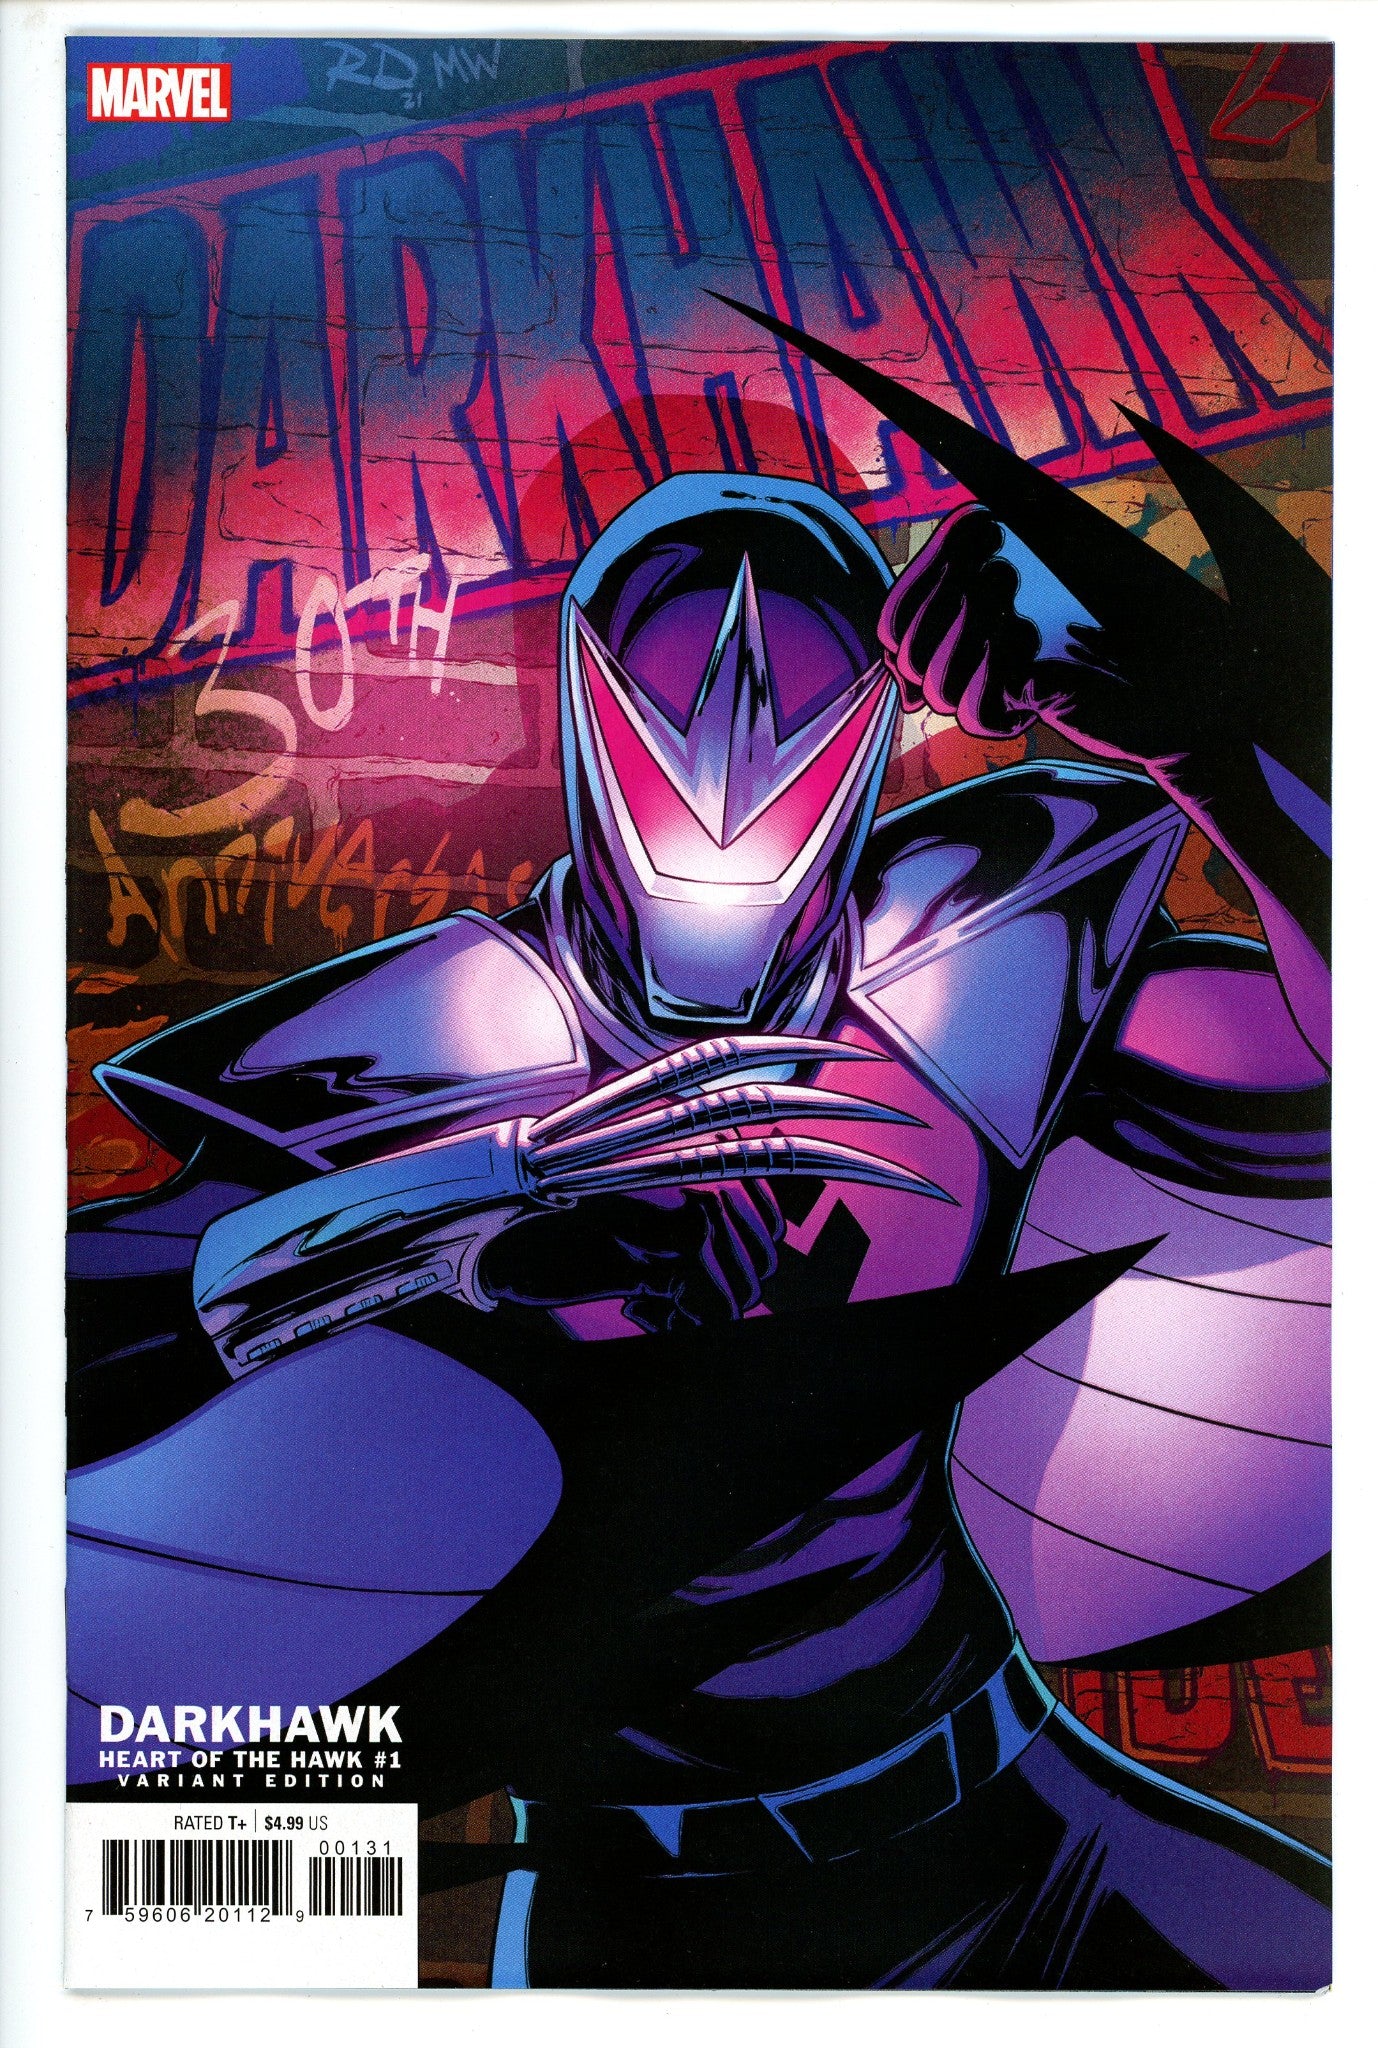 Darkhawk Heart of Hawk 1 Dauterman Variant-CaptCan Comics Inc-CaptCan Comics Inc